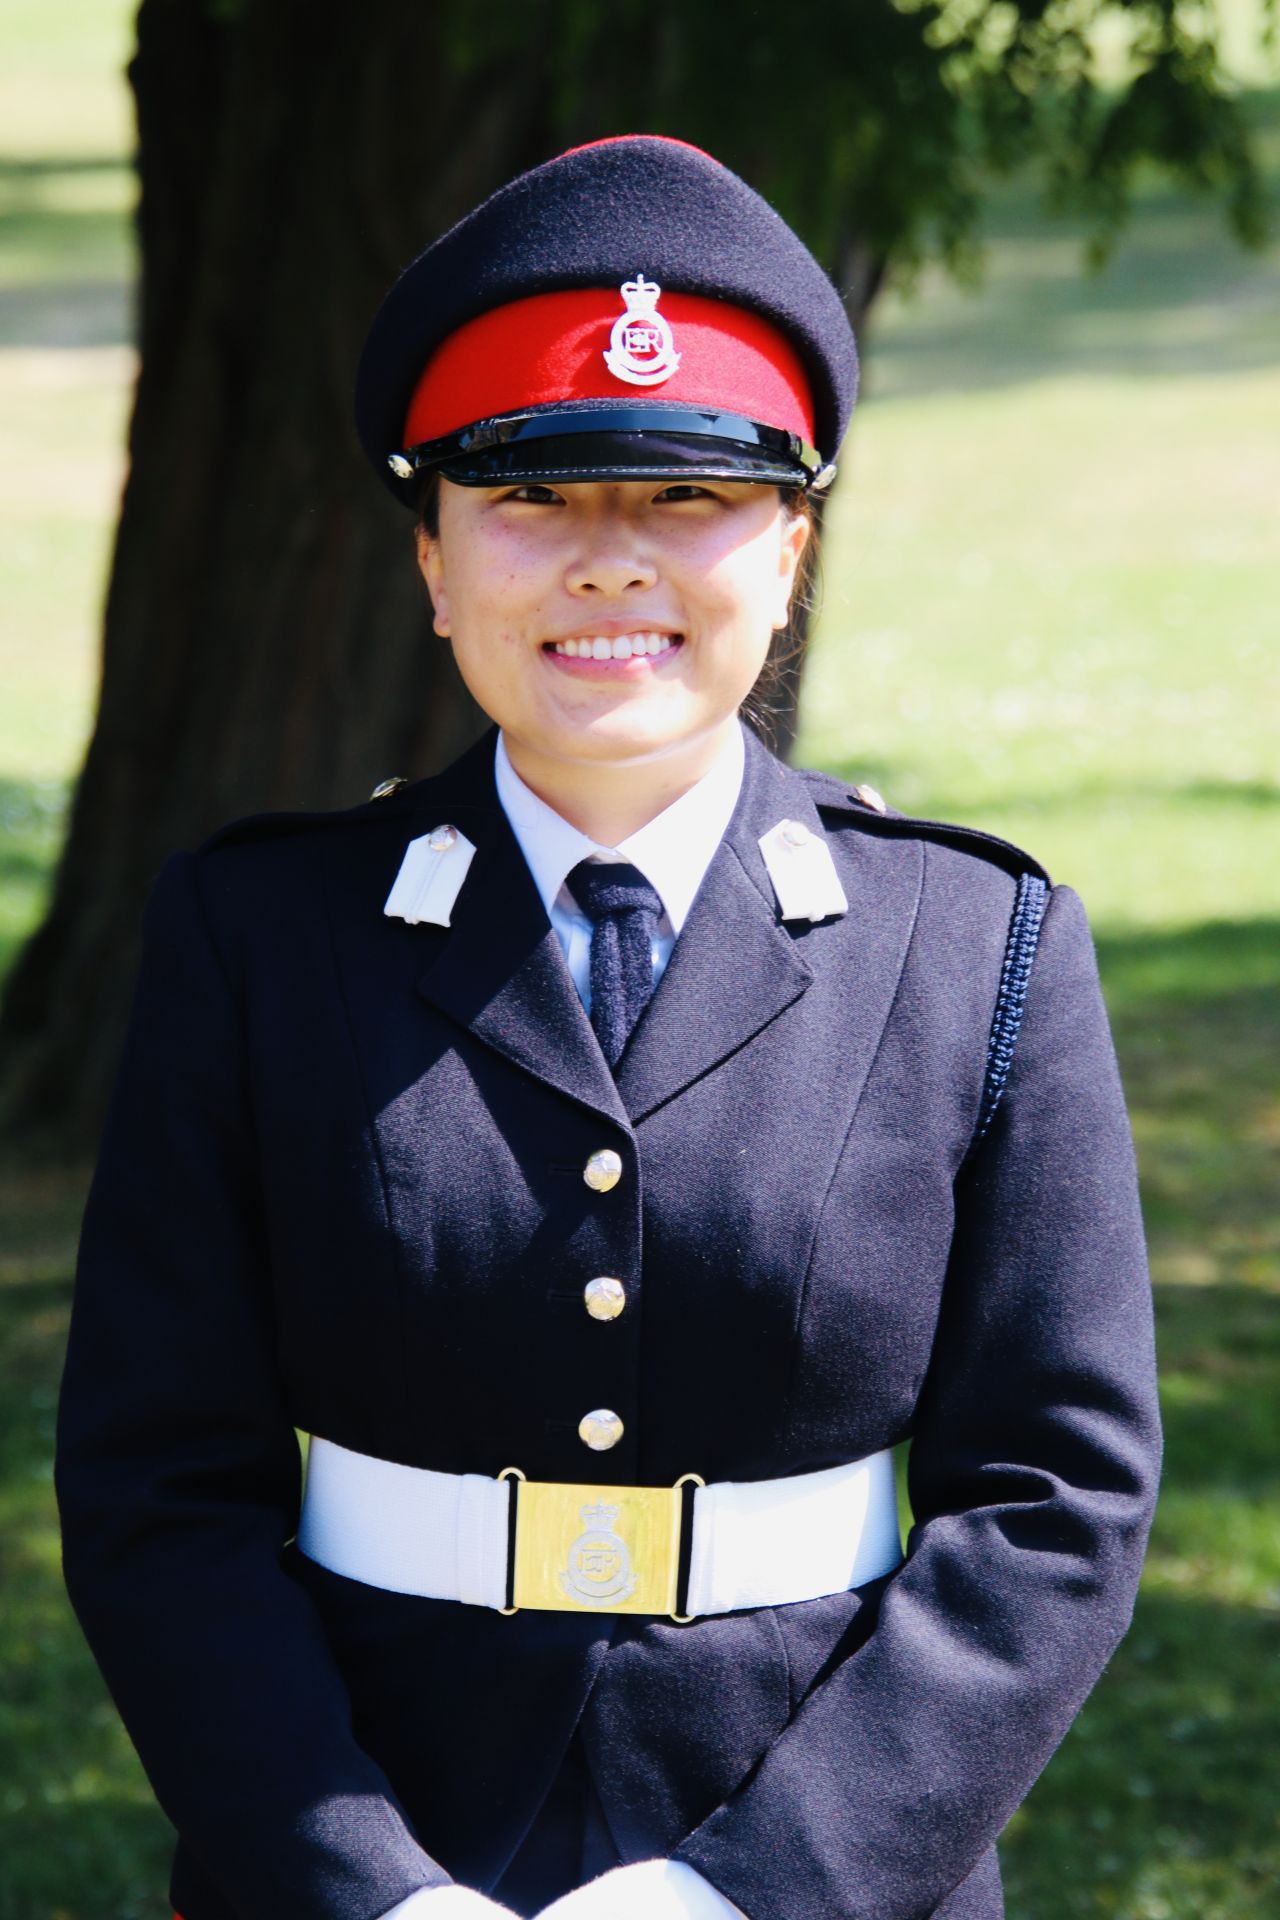 육사 여성 생도, 영국 육사 첫 졸업